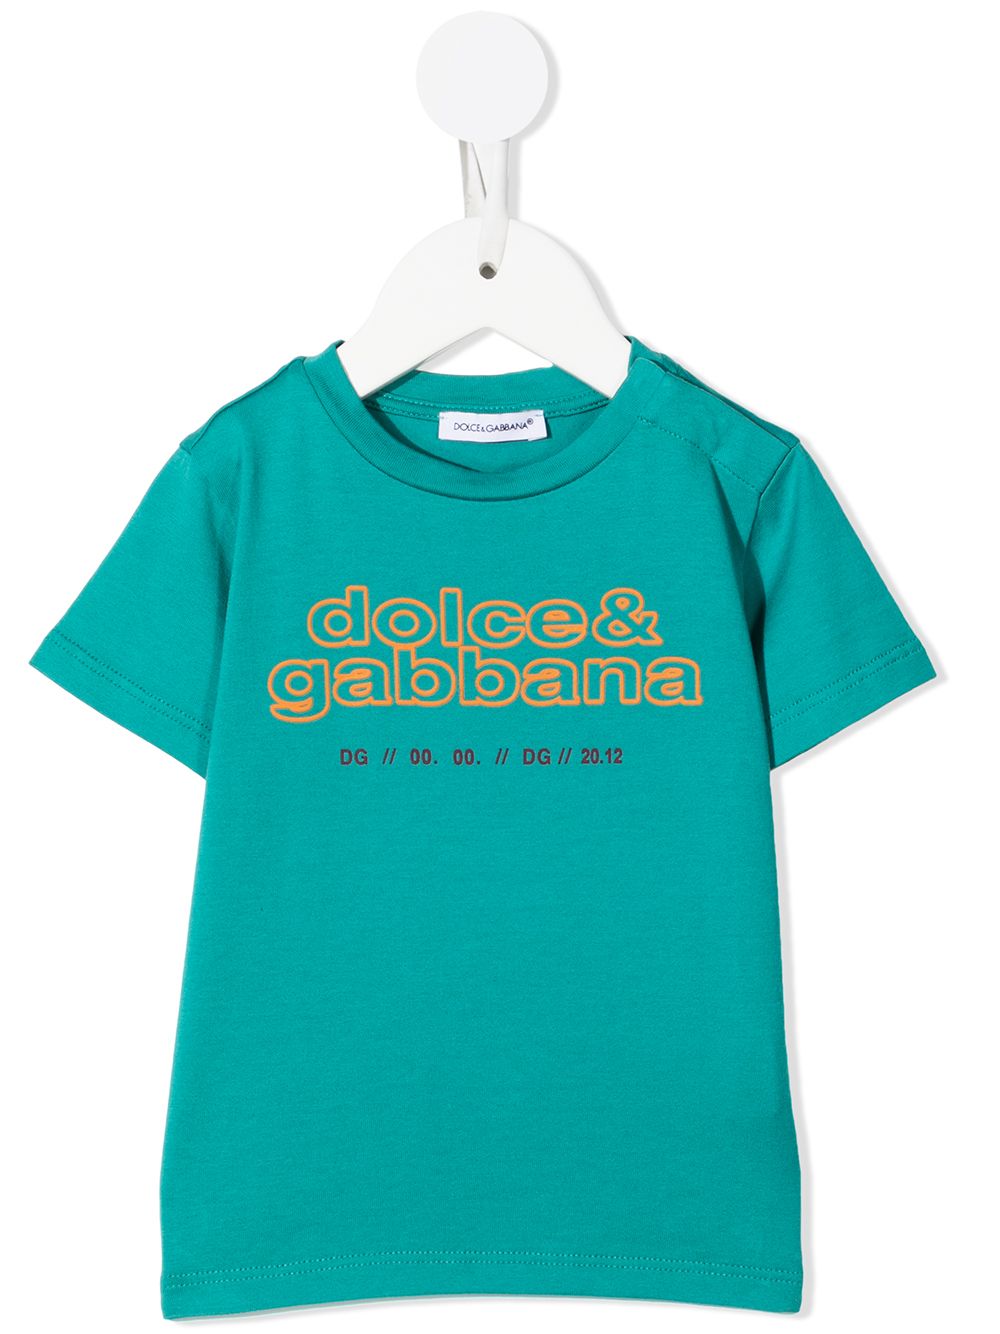 фото Dolce & gabbana kids футболка с логотипом